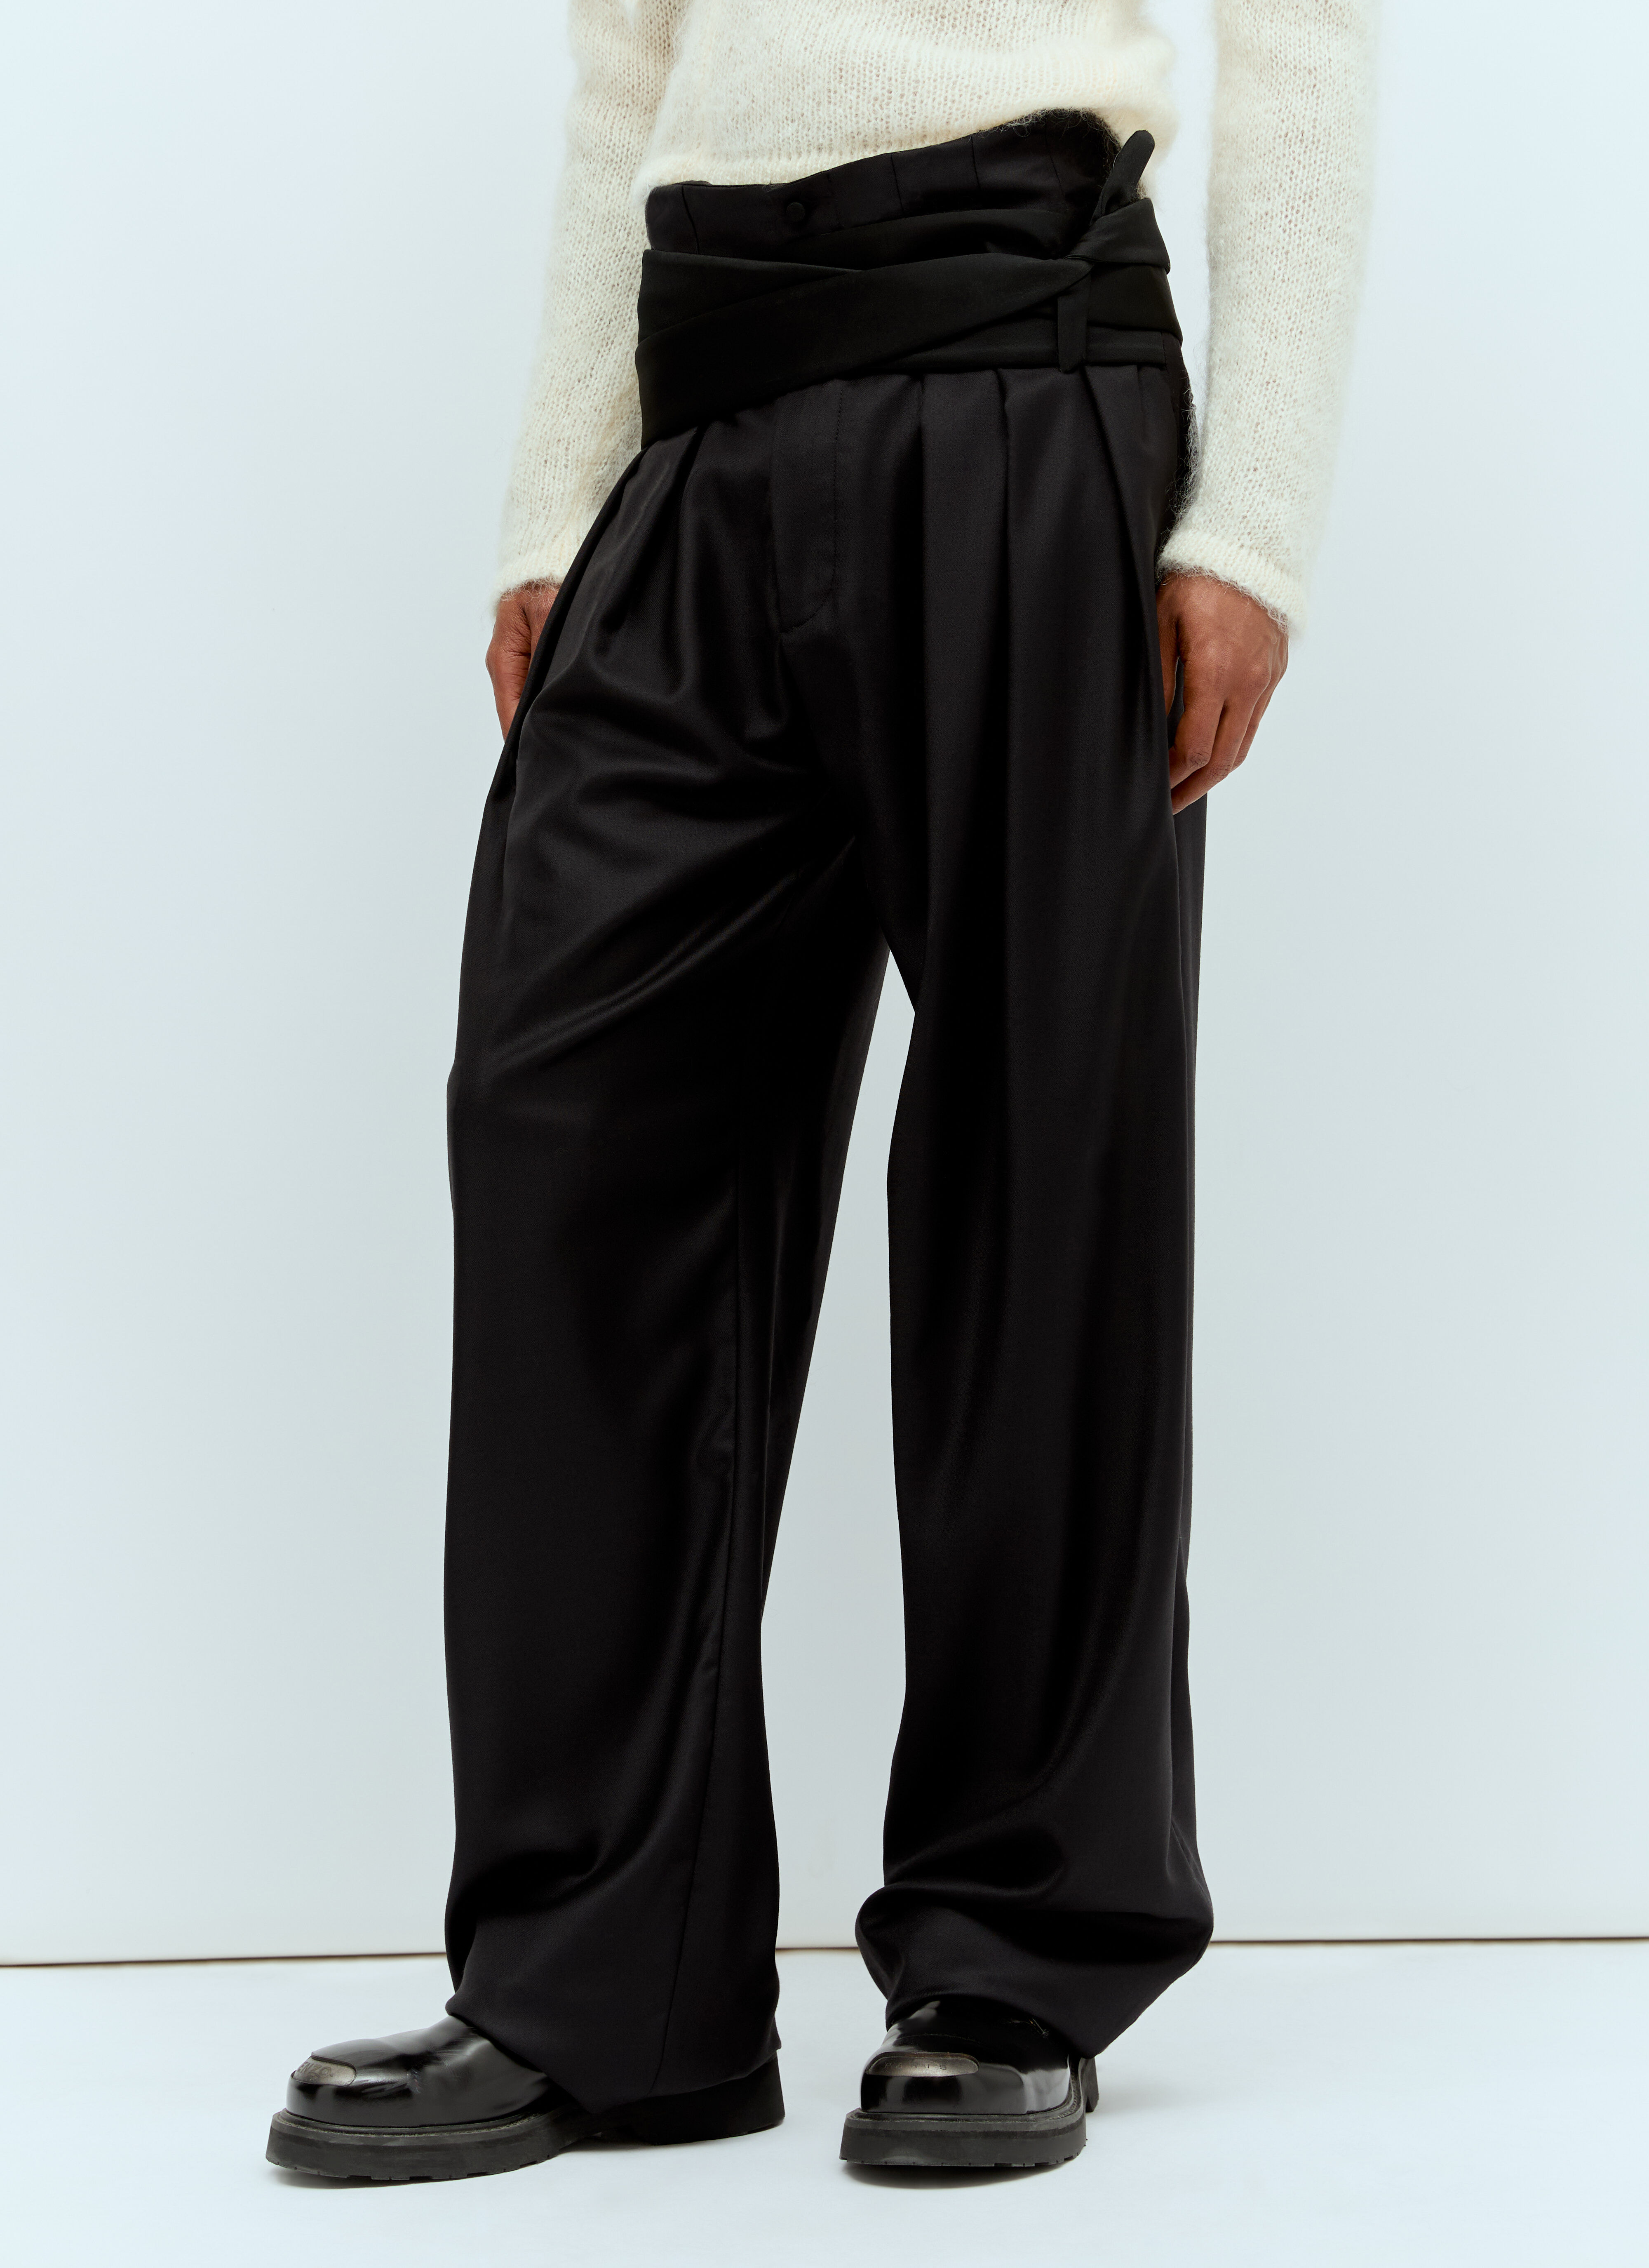 Acne Studios Pleated Pants With Silk Ties Black acn0157012